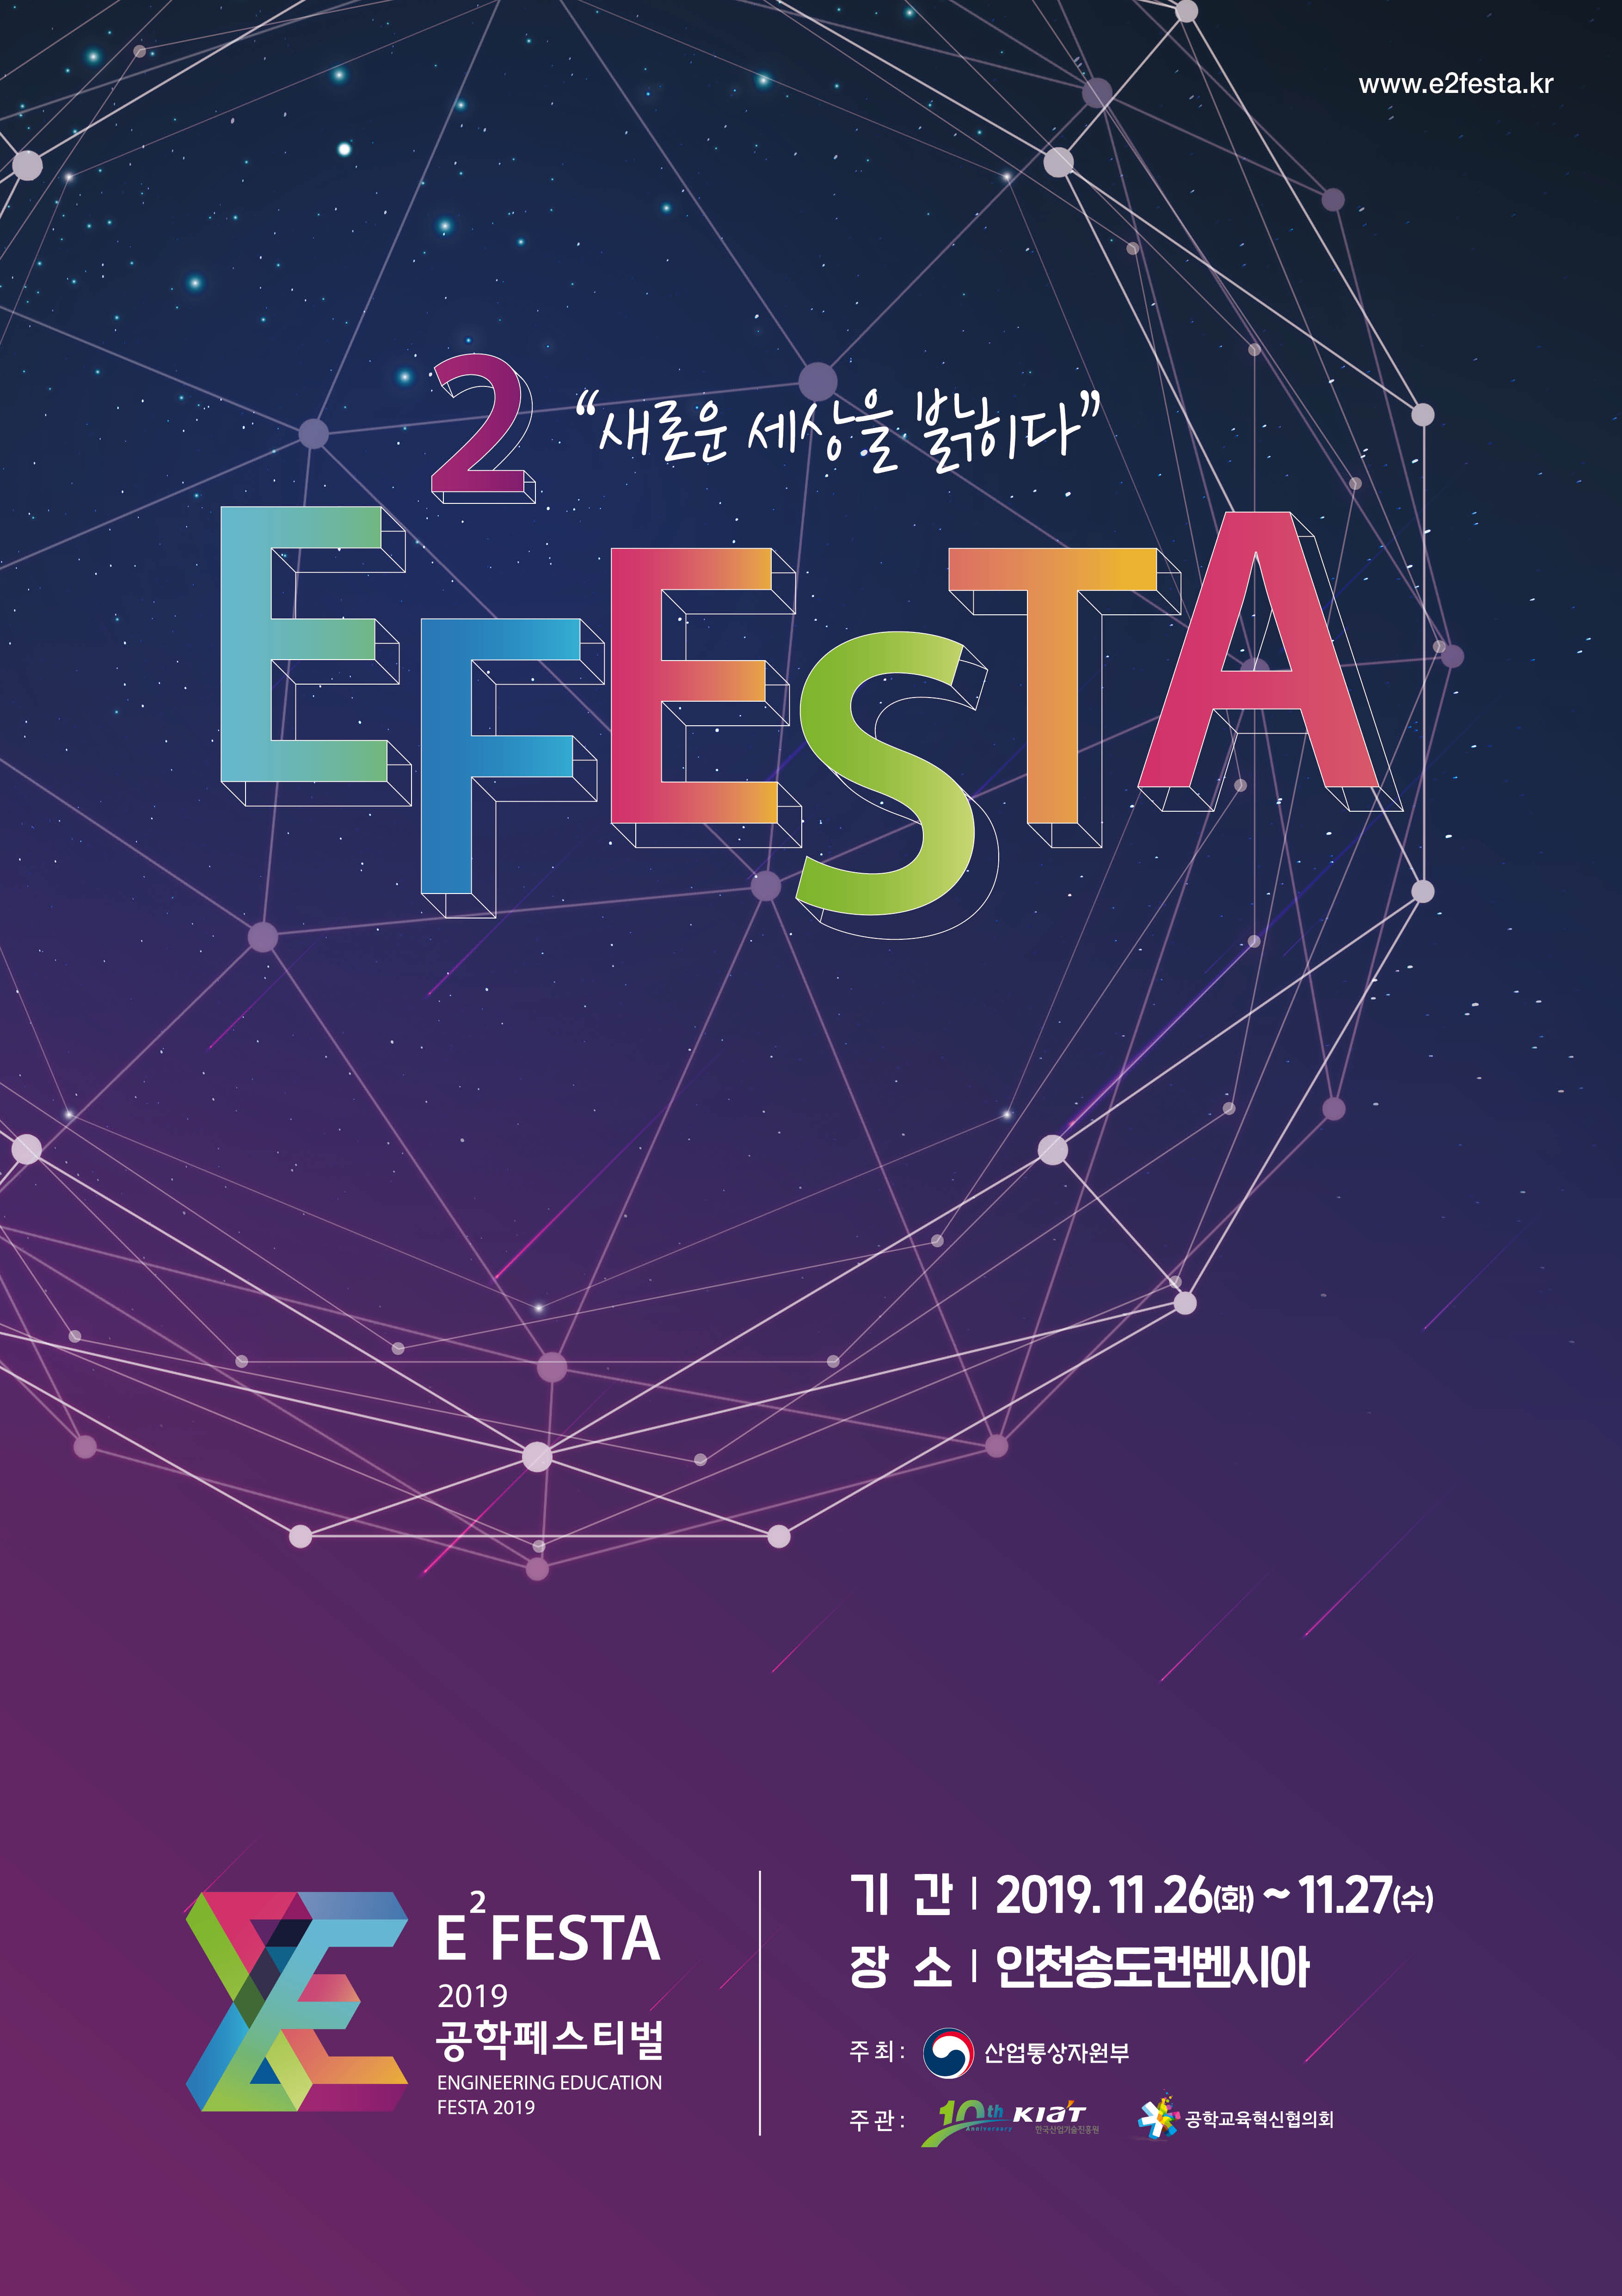 2019 공학페스티벌(E²Festa) 참관 학생 모집